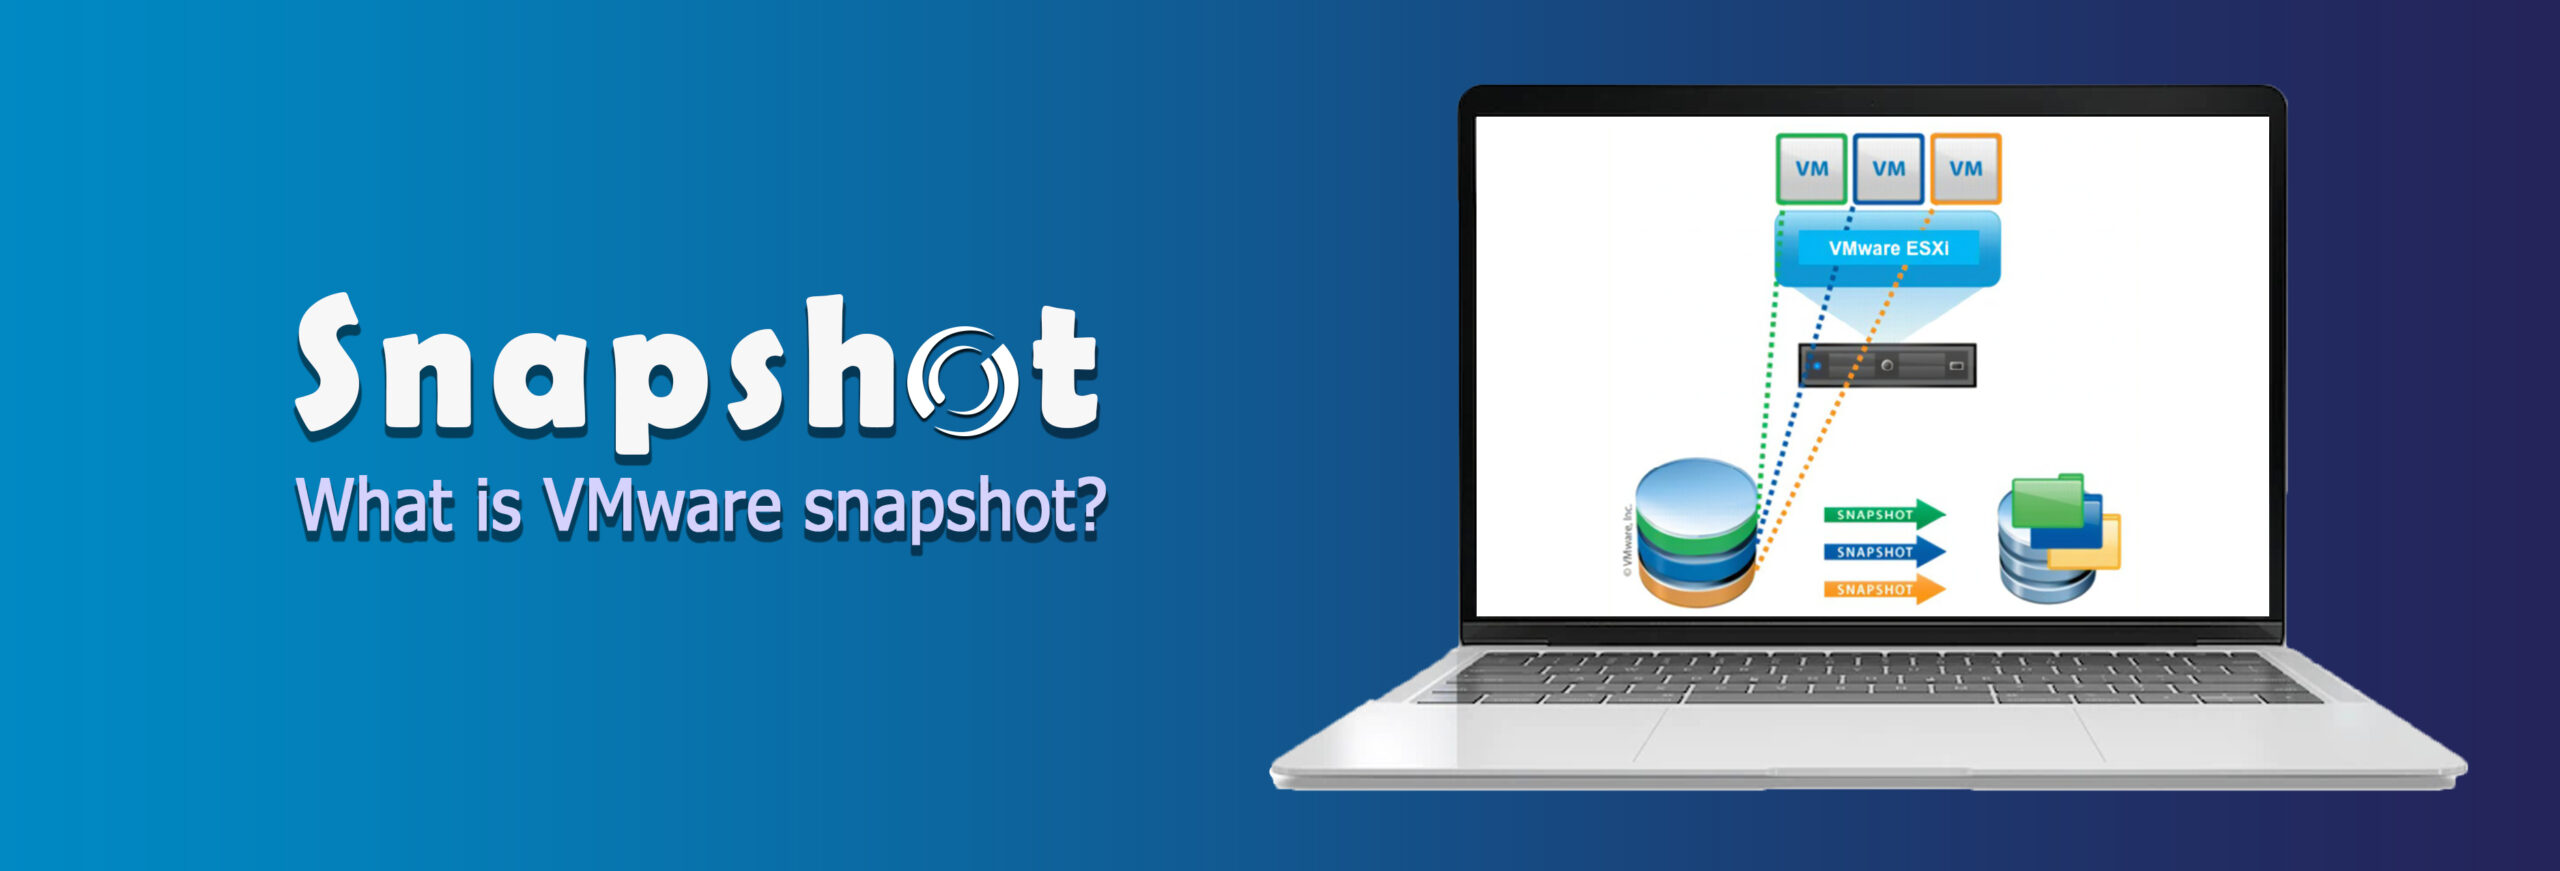 راهنمای چگونگی مدیریت Snapshot VMware ها